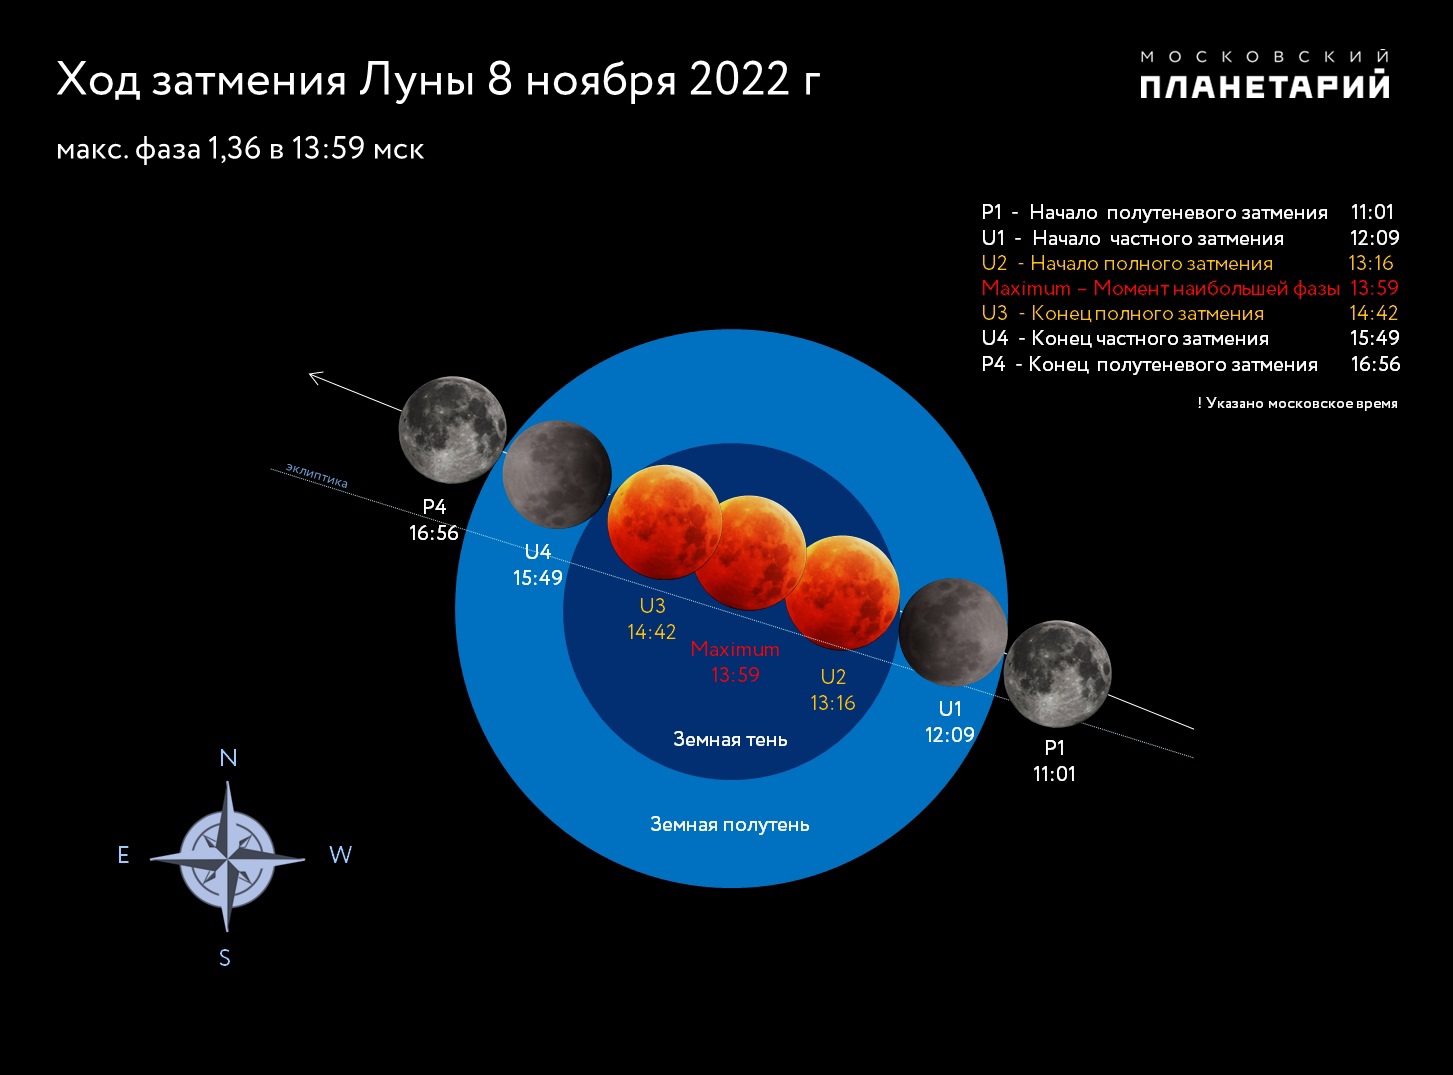 Полное лунное затмение 8 ноября 2022 года